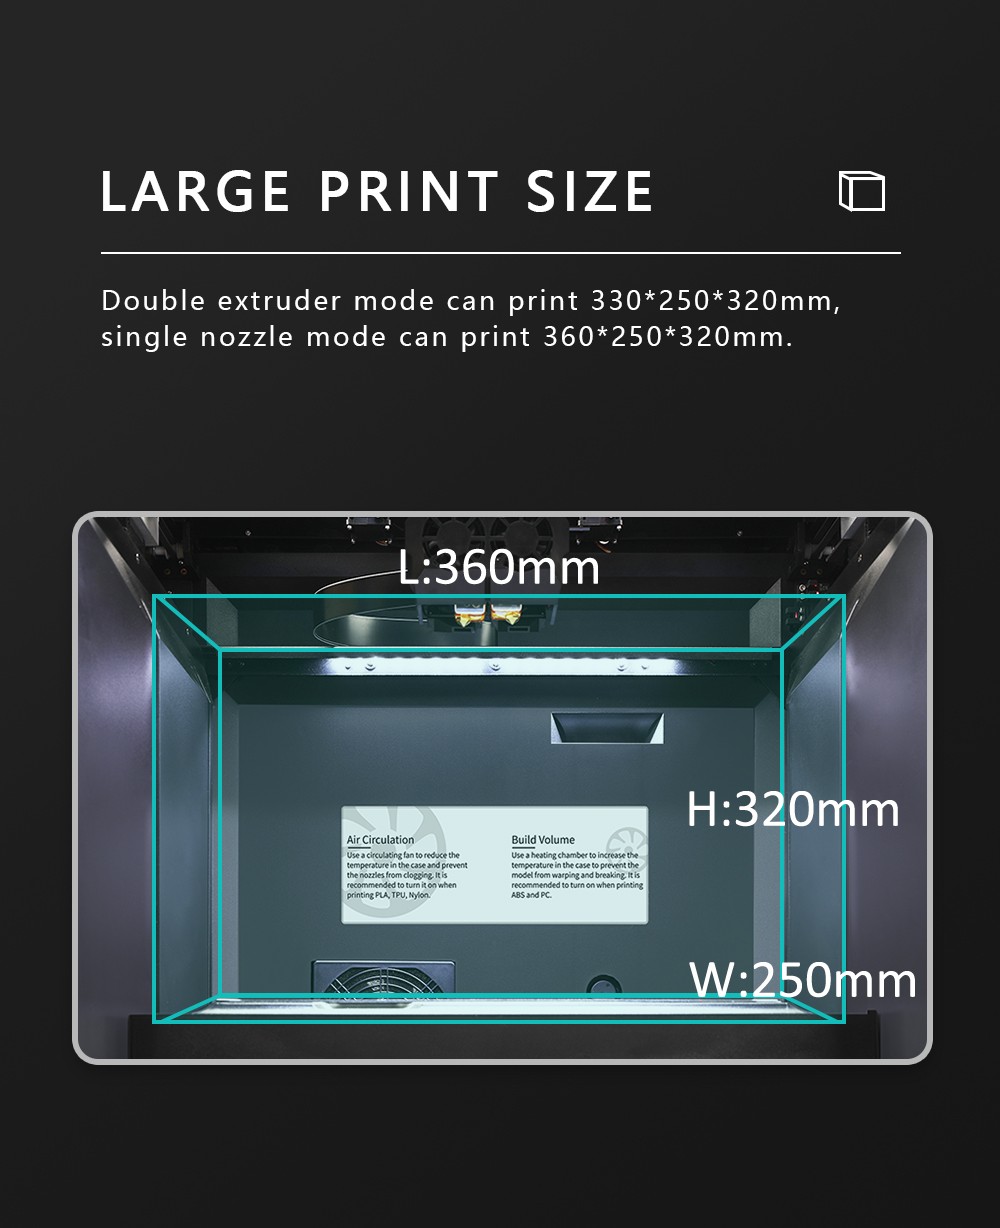 QIDI i Impressora 3D Rápida